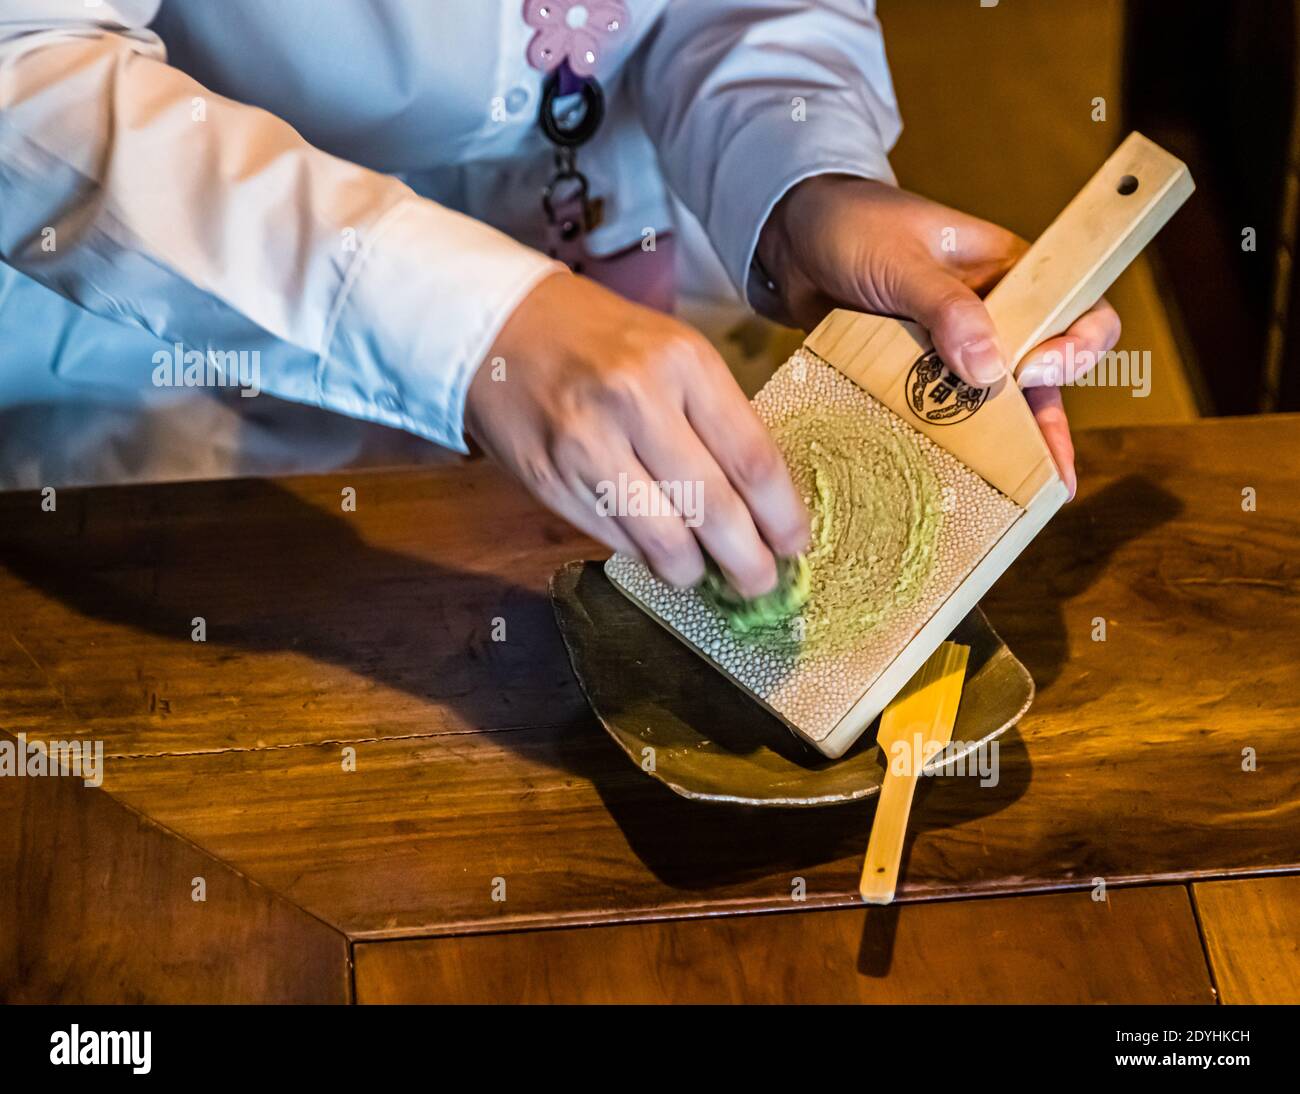 Echte Wasabi wird in Japan auf einer oroshiganen Reibe aus getrockneter  Haifischhaut geriebener. Wasabi Reibe aus Haifischhaut, die während des  typischen japanischen Abendessens verwendet wird Stockfotografie - Alamy